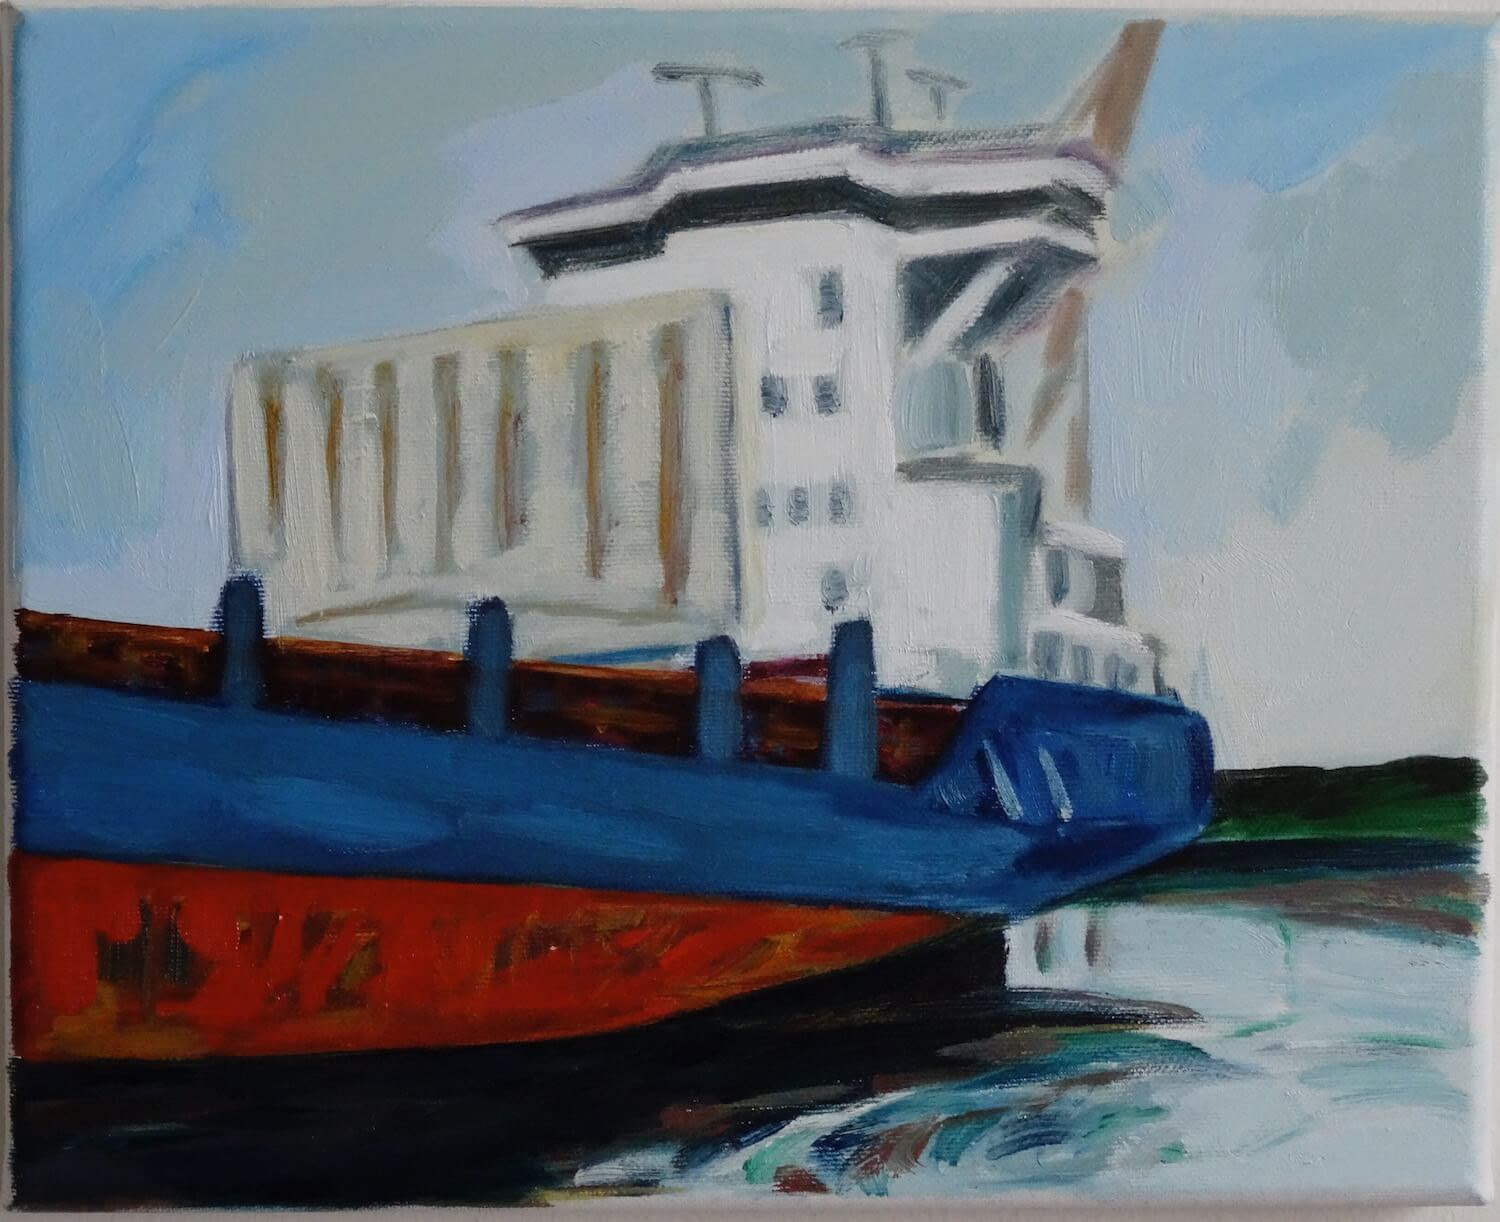 Schets van vrachtschip (maritiem olieverfschilderij in de haven van Rotterdam - Jayven Art)